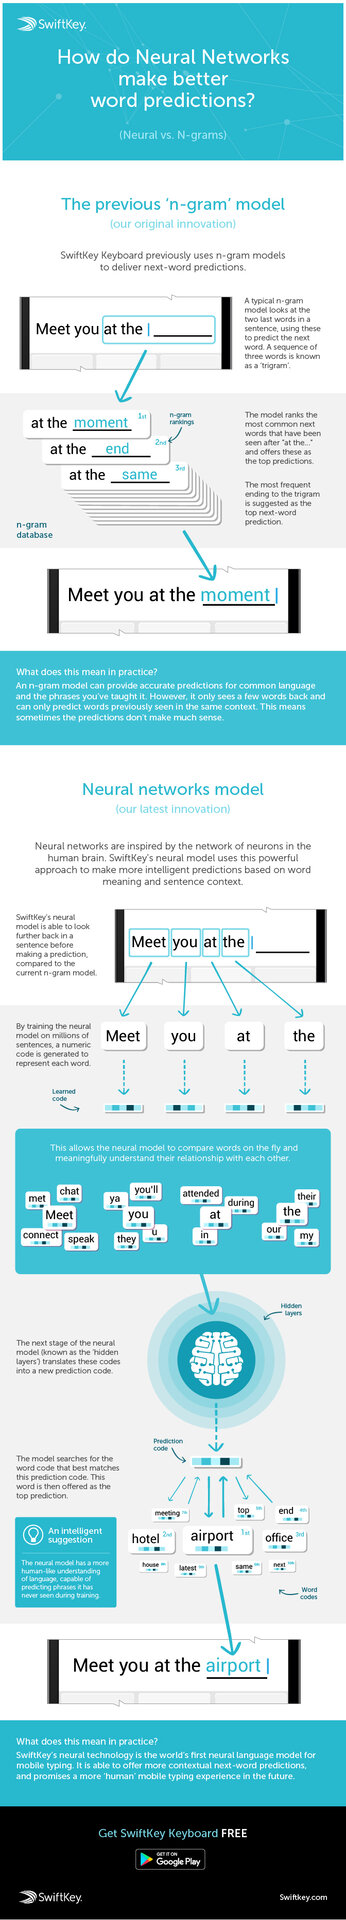  Infografik zum neuronalen Netzwerk von Swiftkey